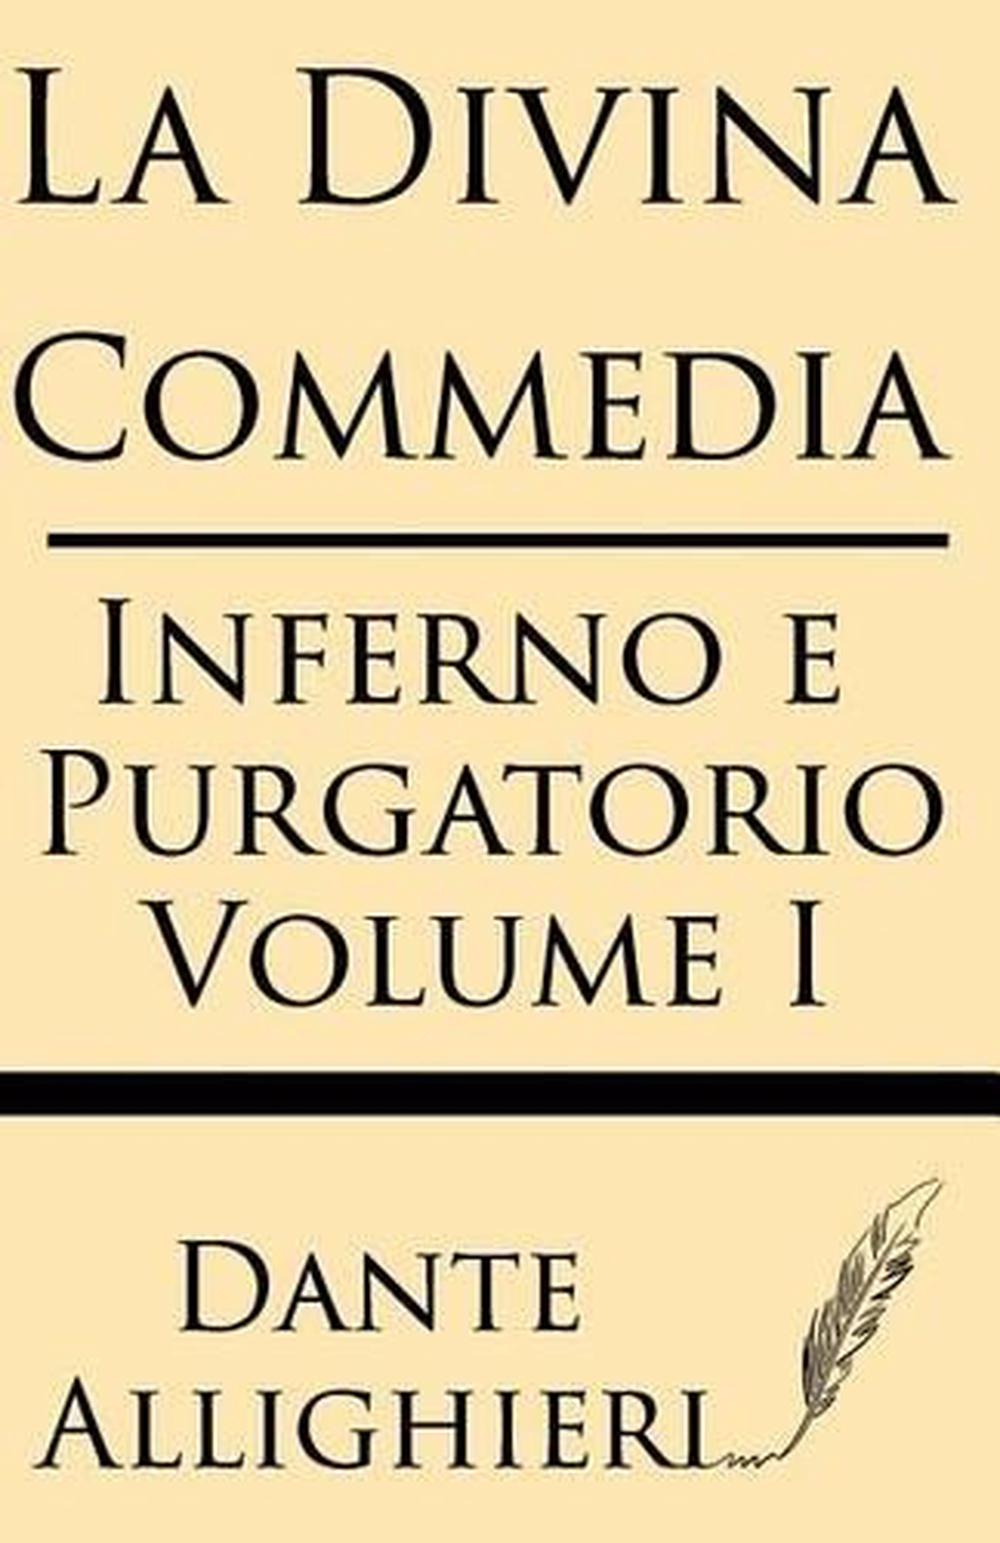 La Divina Comedia (Volume I): Inferno E Purgatorio by Dante Allighieri ...